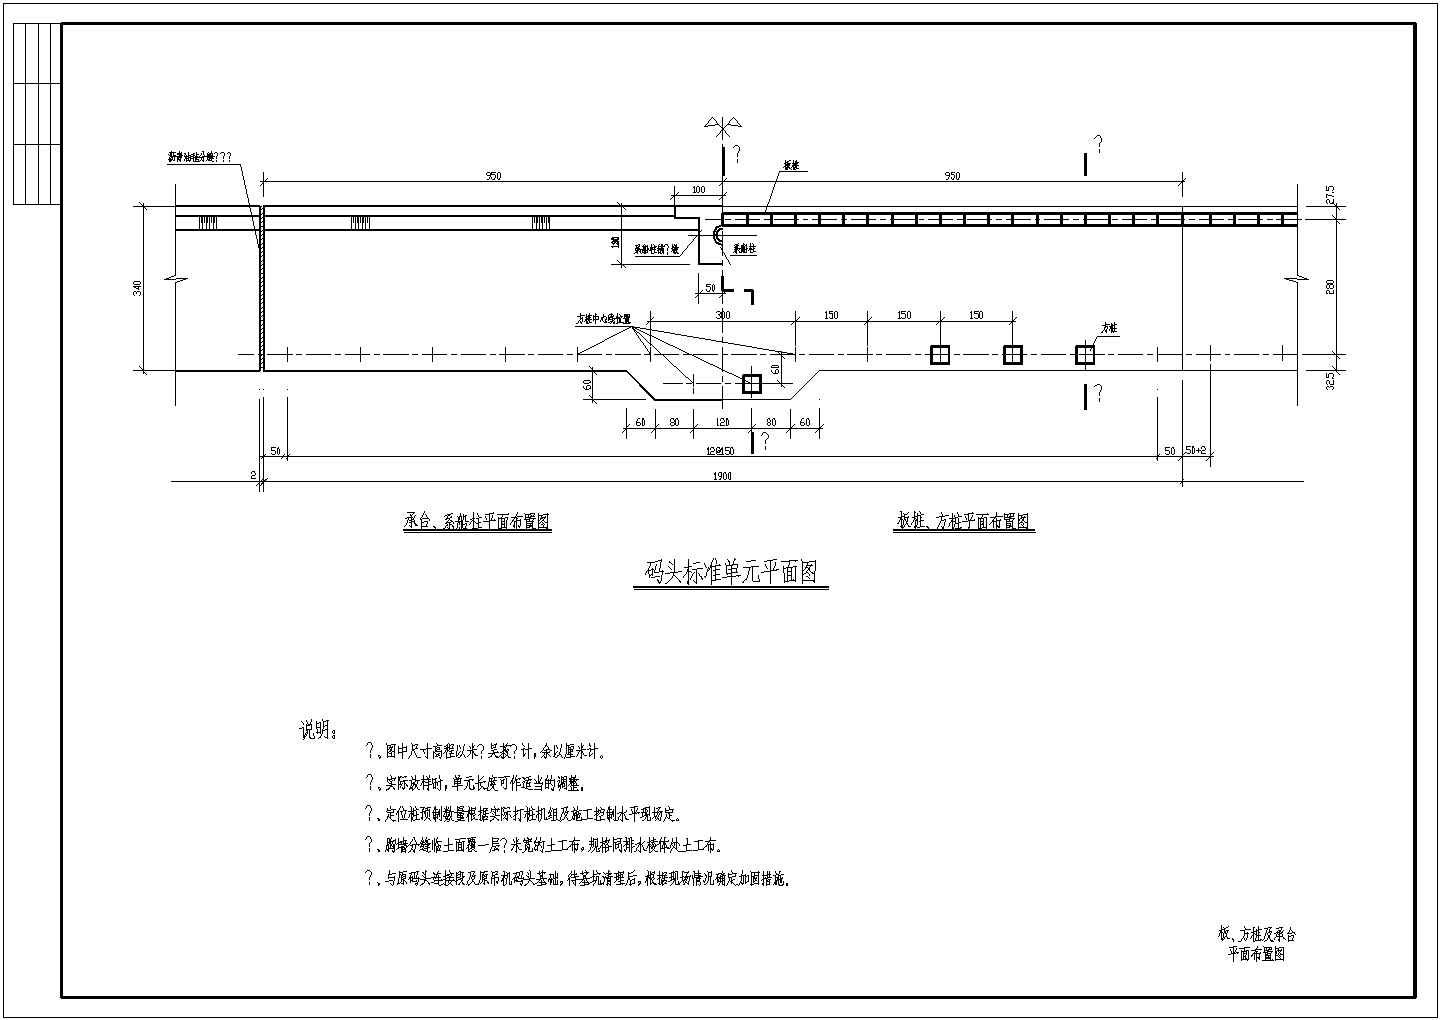 技施阶段板桩与预制桩相结合的码头结构布置图